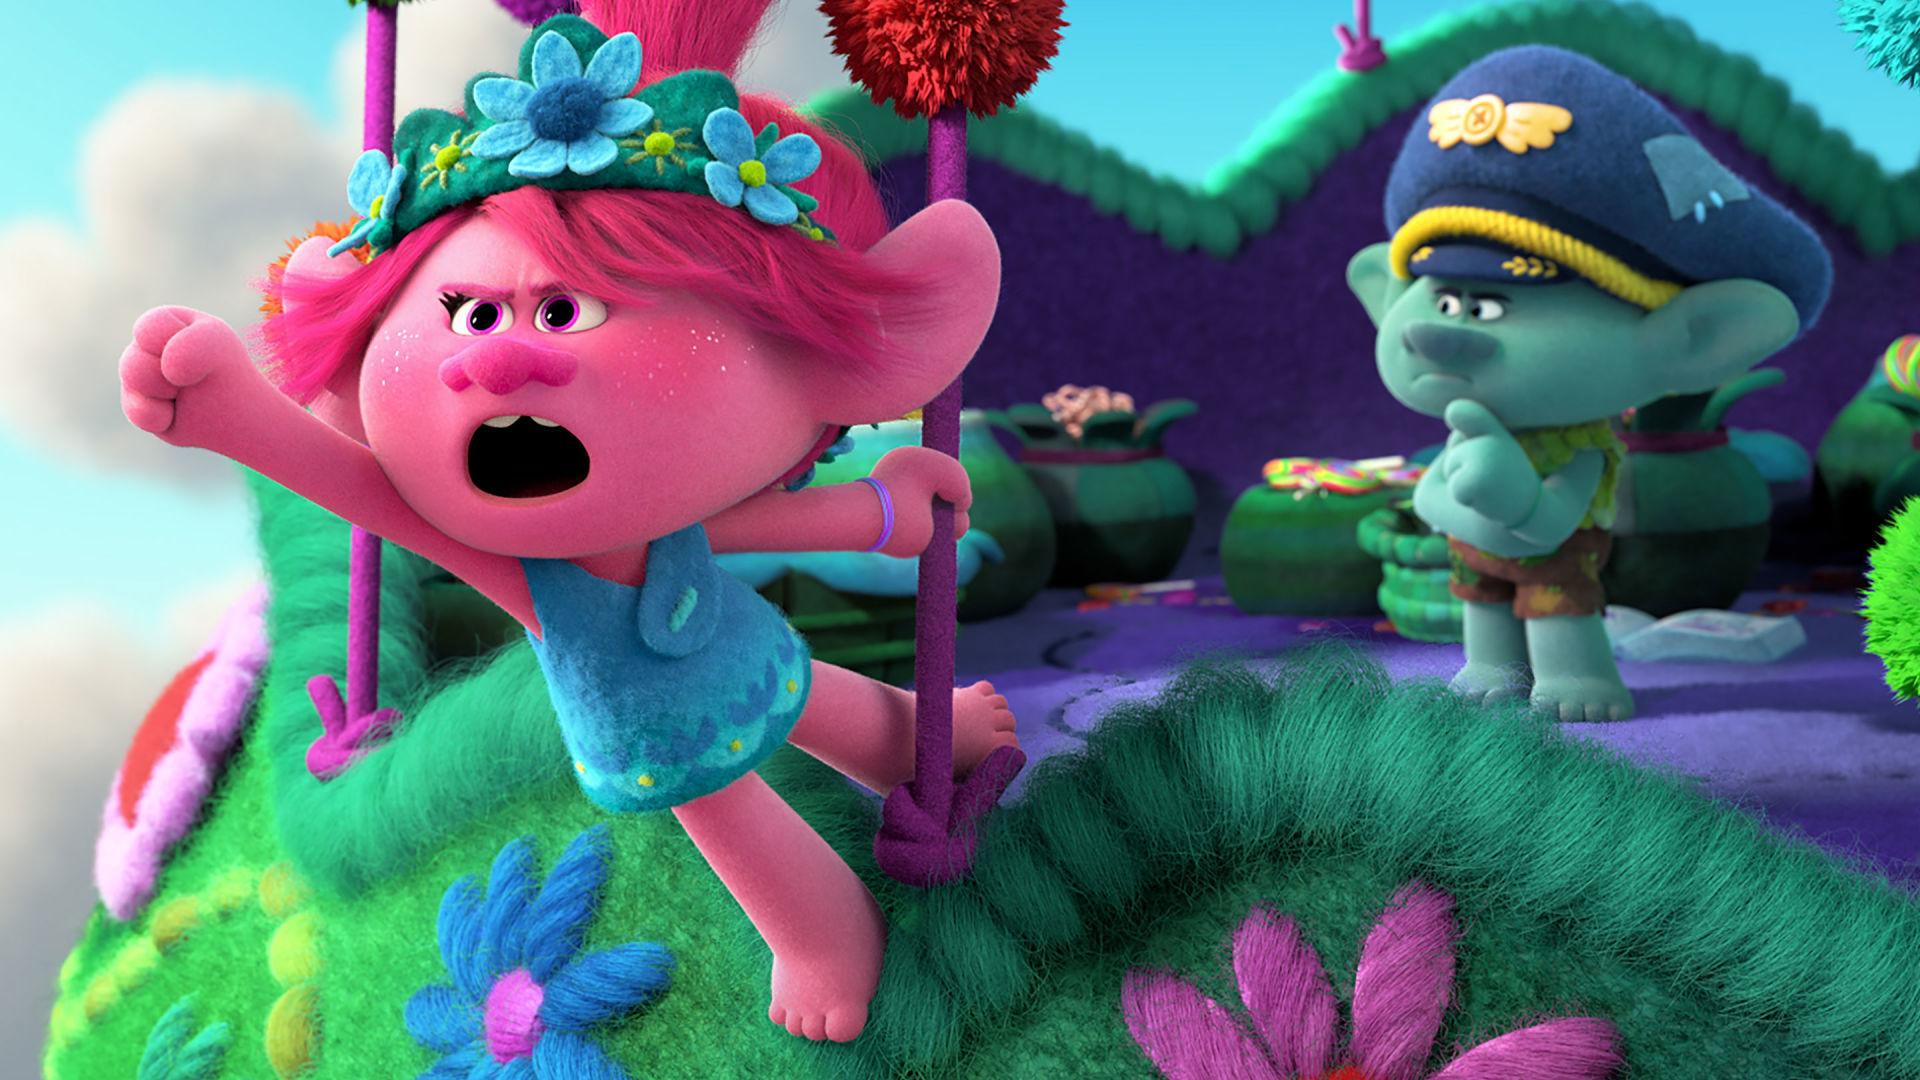 Coloriages Poppy et Trolls: Les personnages de dessins animés inhabituels sont toujours spéciaux pour les enfants